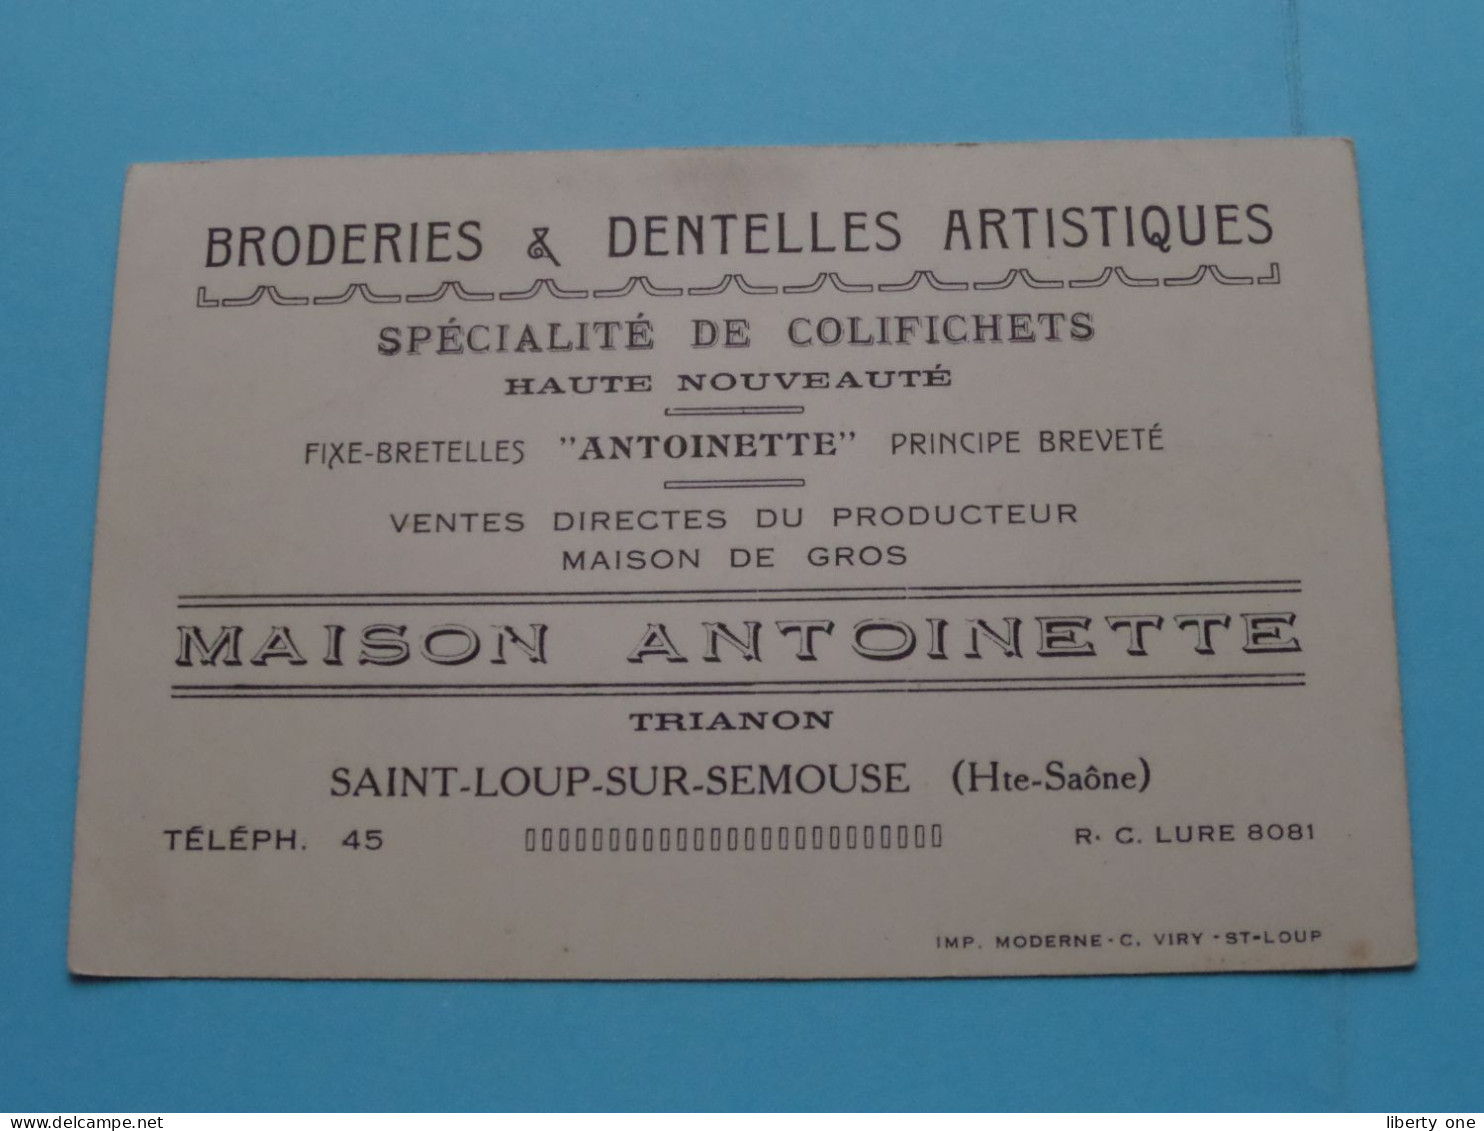 Maison ANTOINETTE Trianon - Saint-Loup-sur-Semouse (H. Saone) Tél 45 ( Voir / Zie SCAN ) FRANCE ! - Visiting Cards